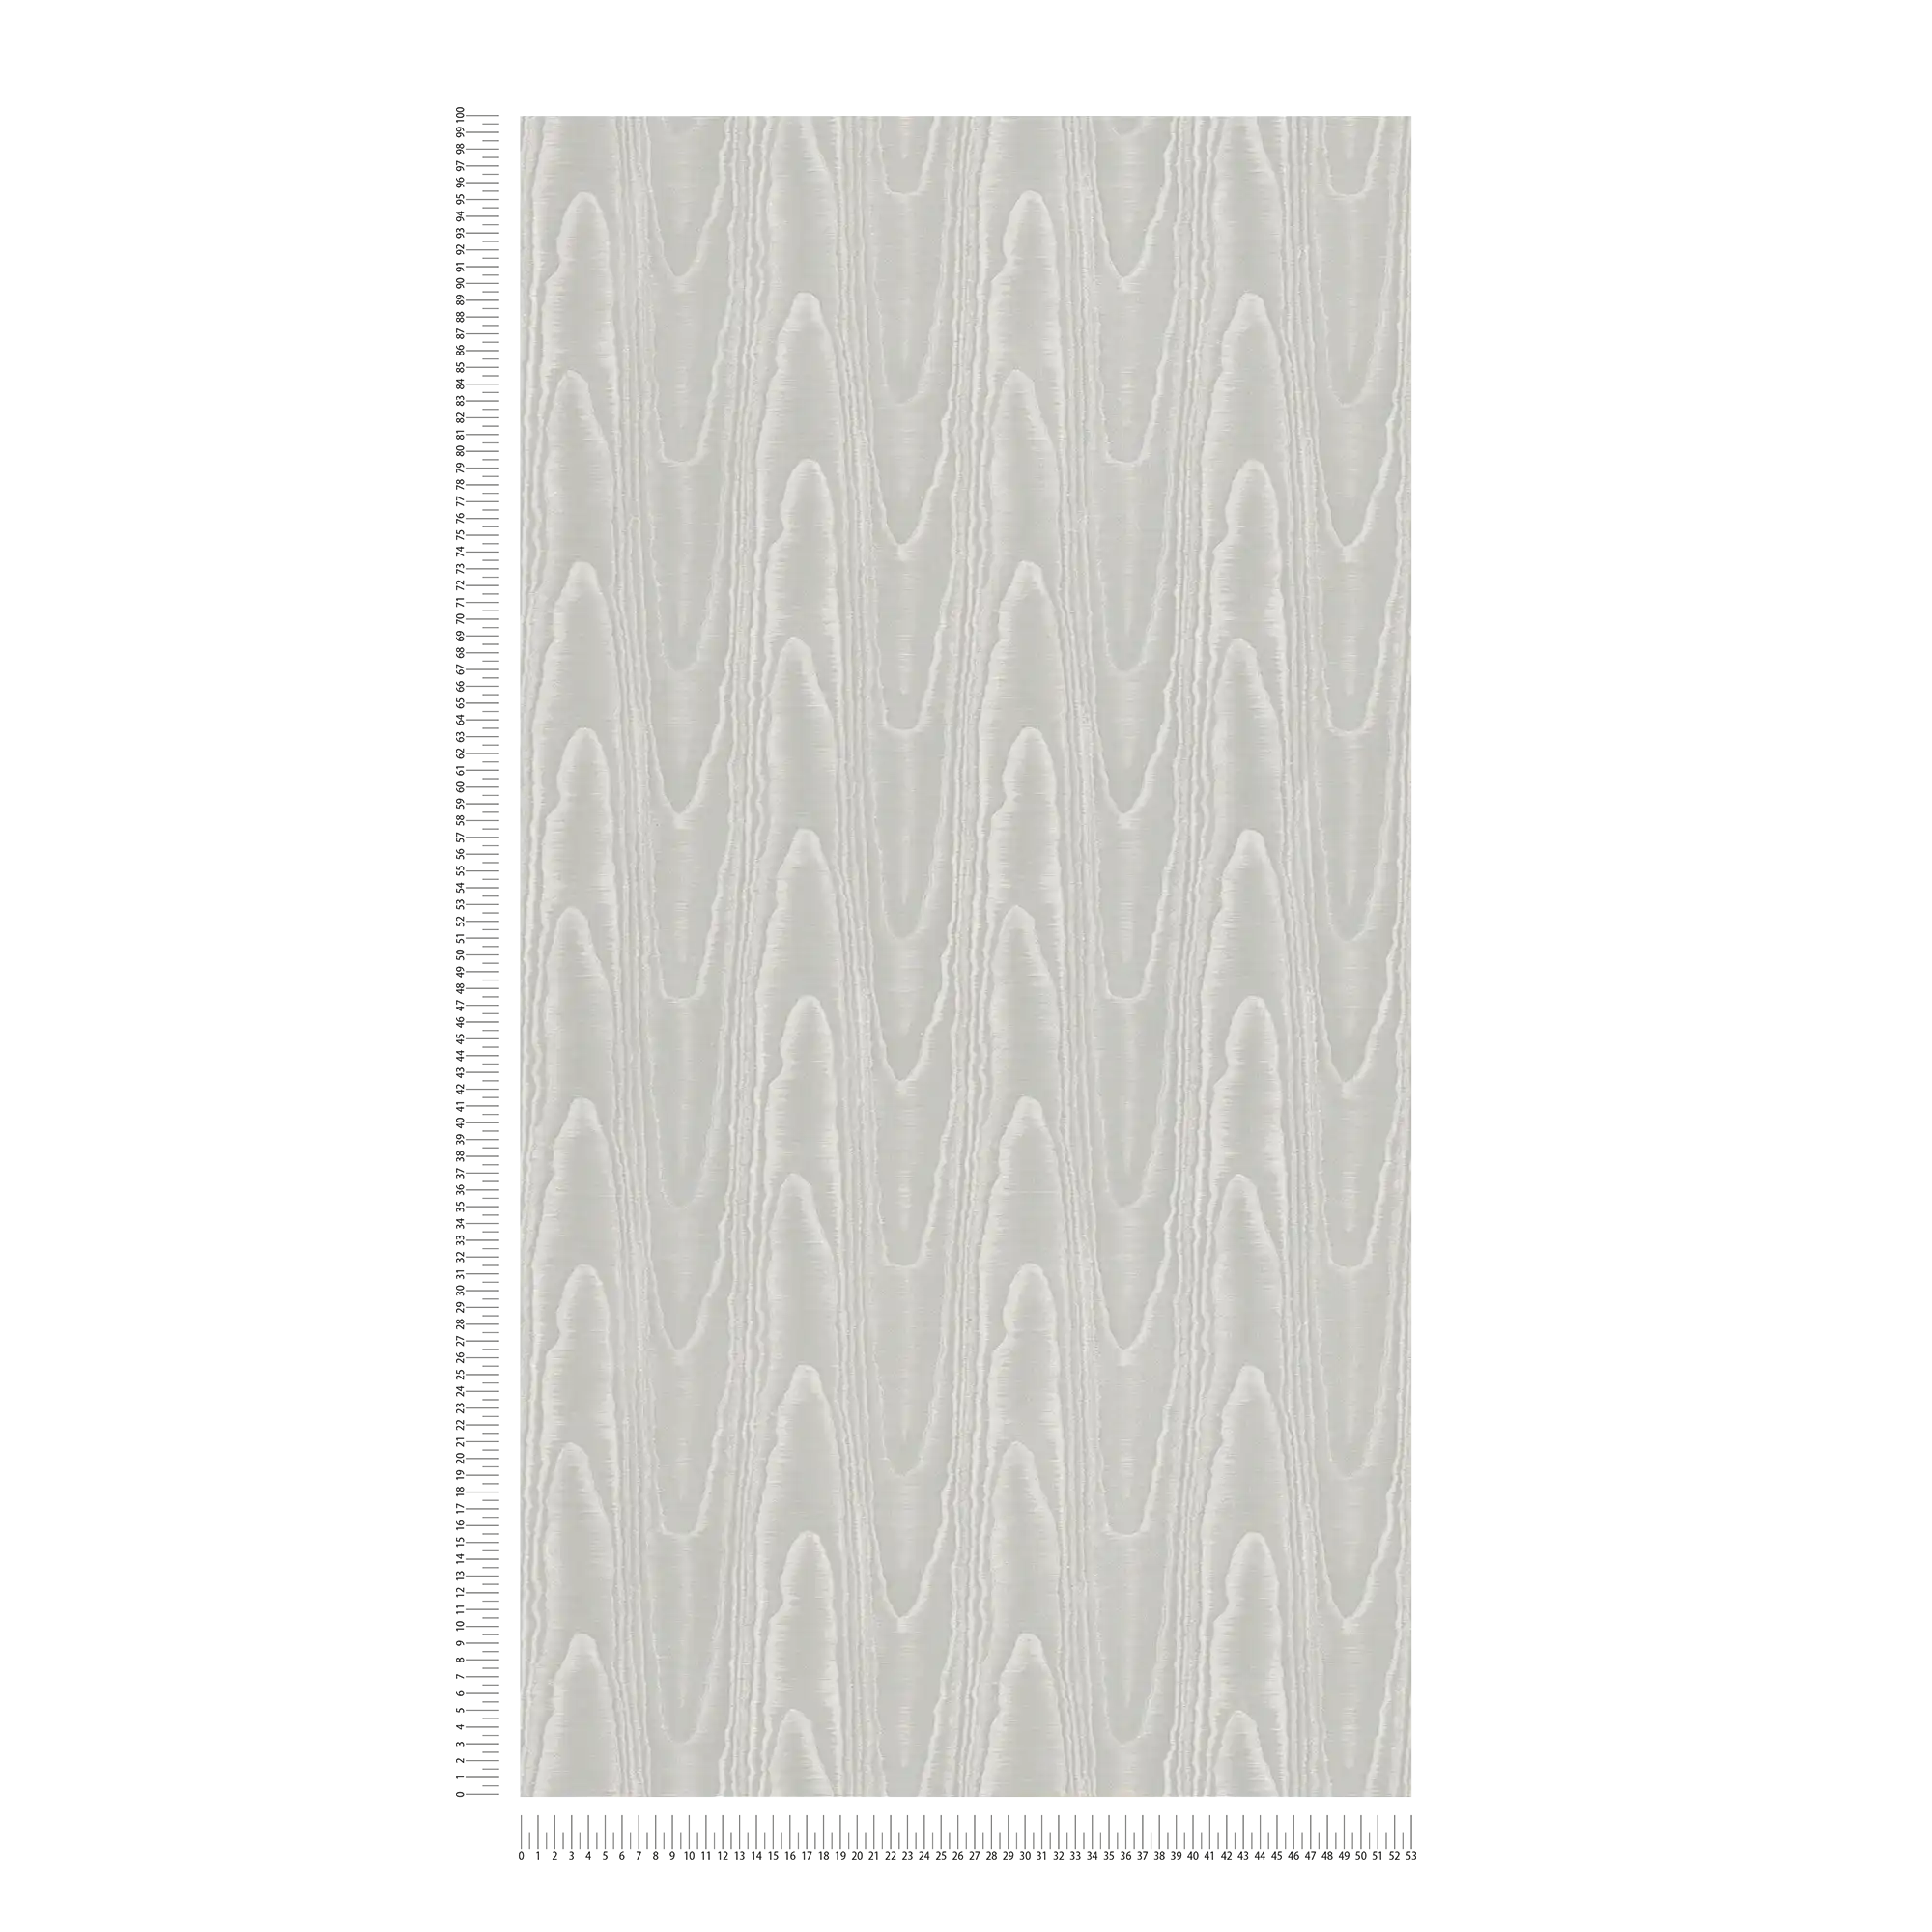             Silver grey wallpaper silk moiré & wave pattern - grey
        